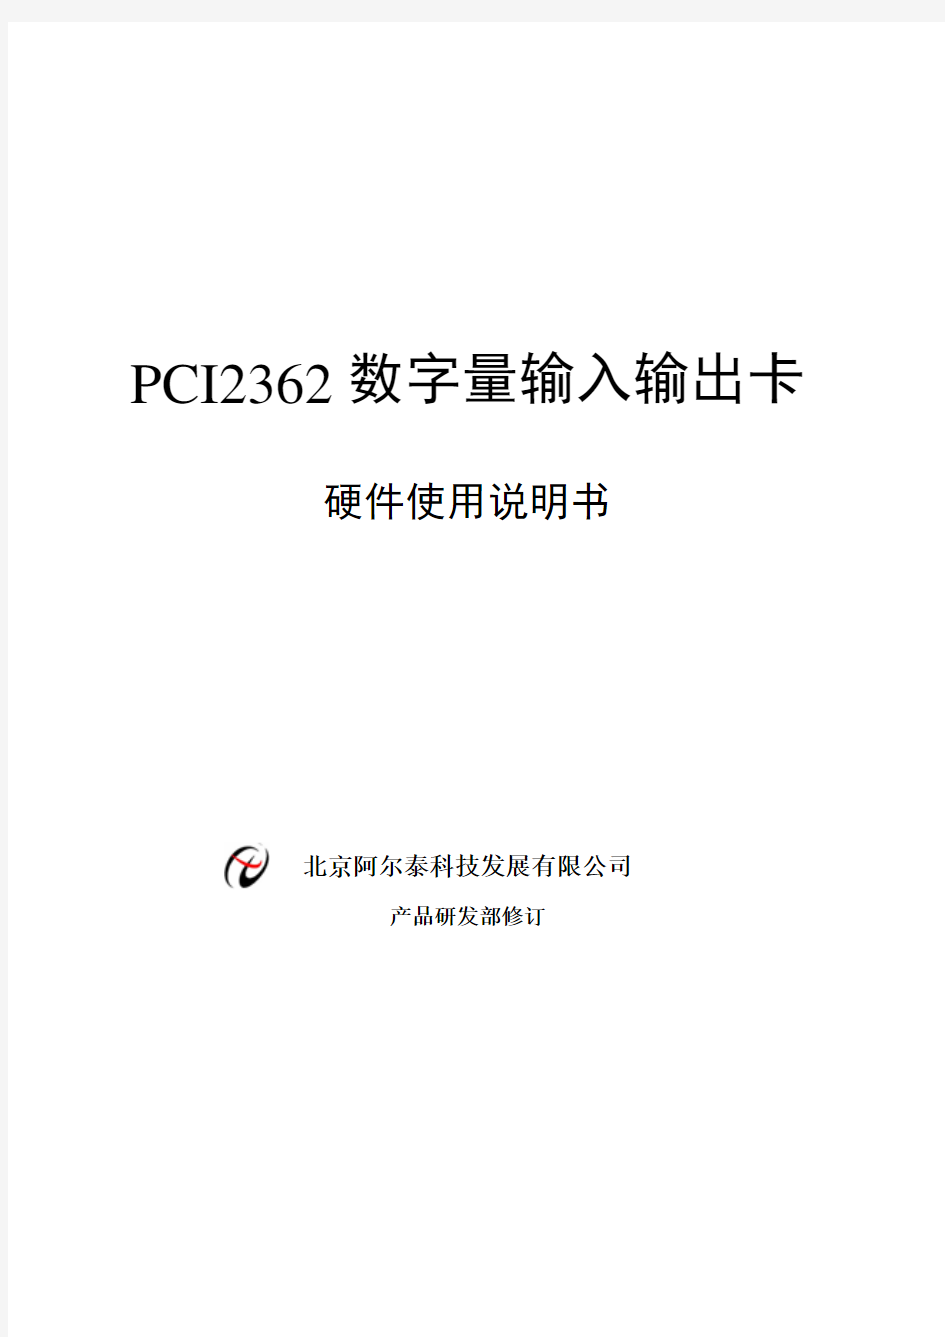 PCI2362 数字量输入输出卡